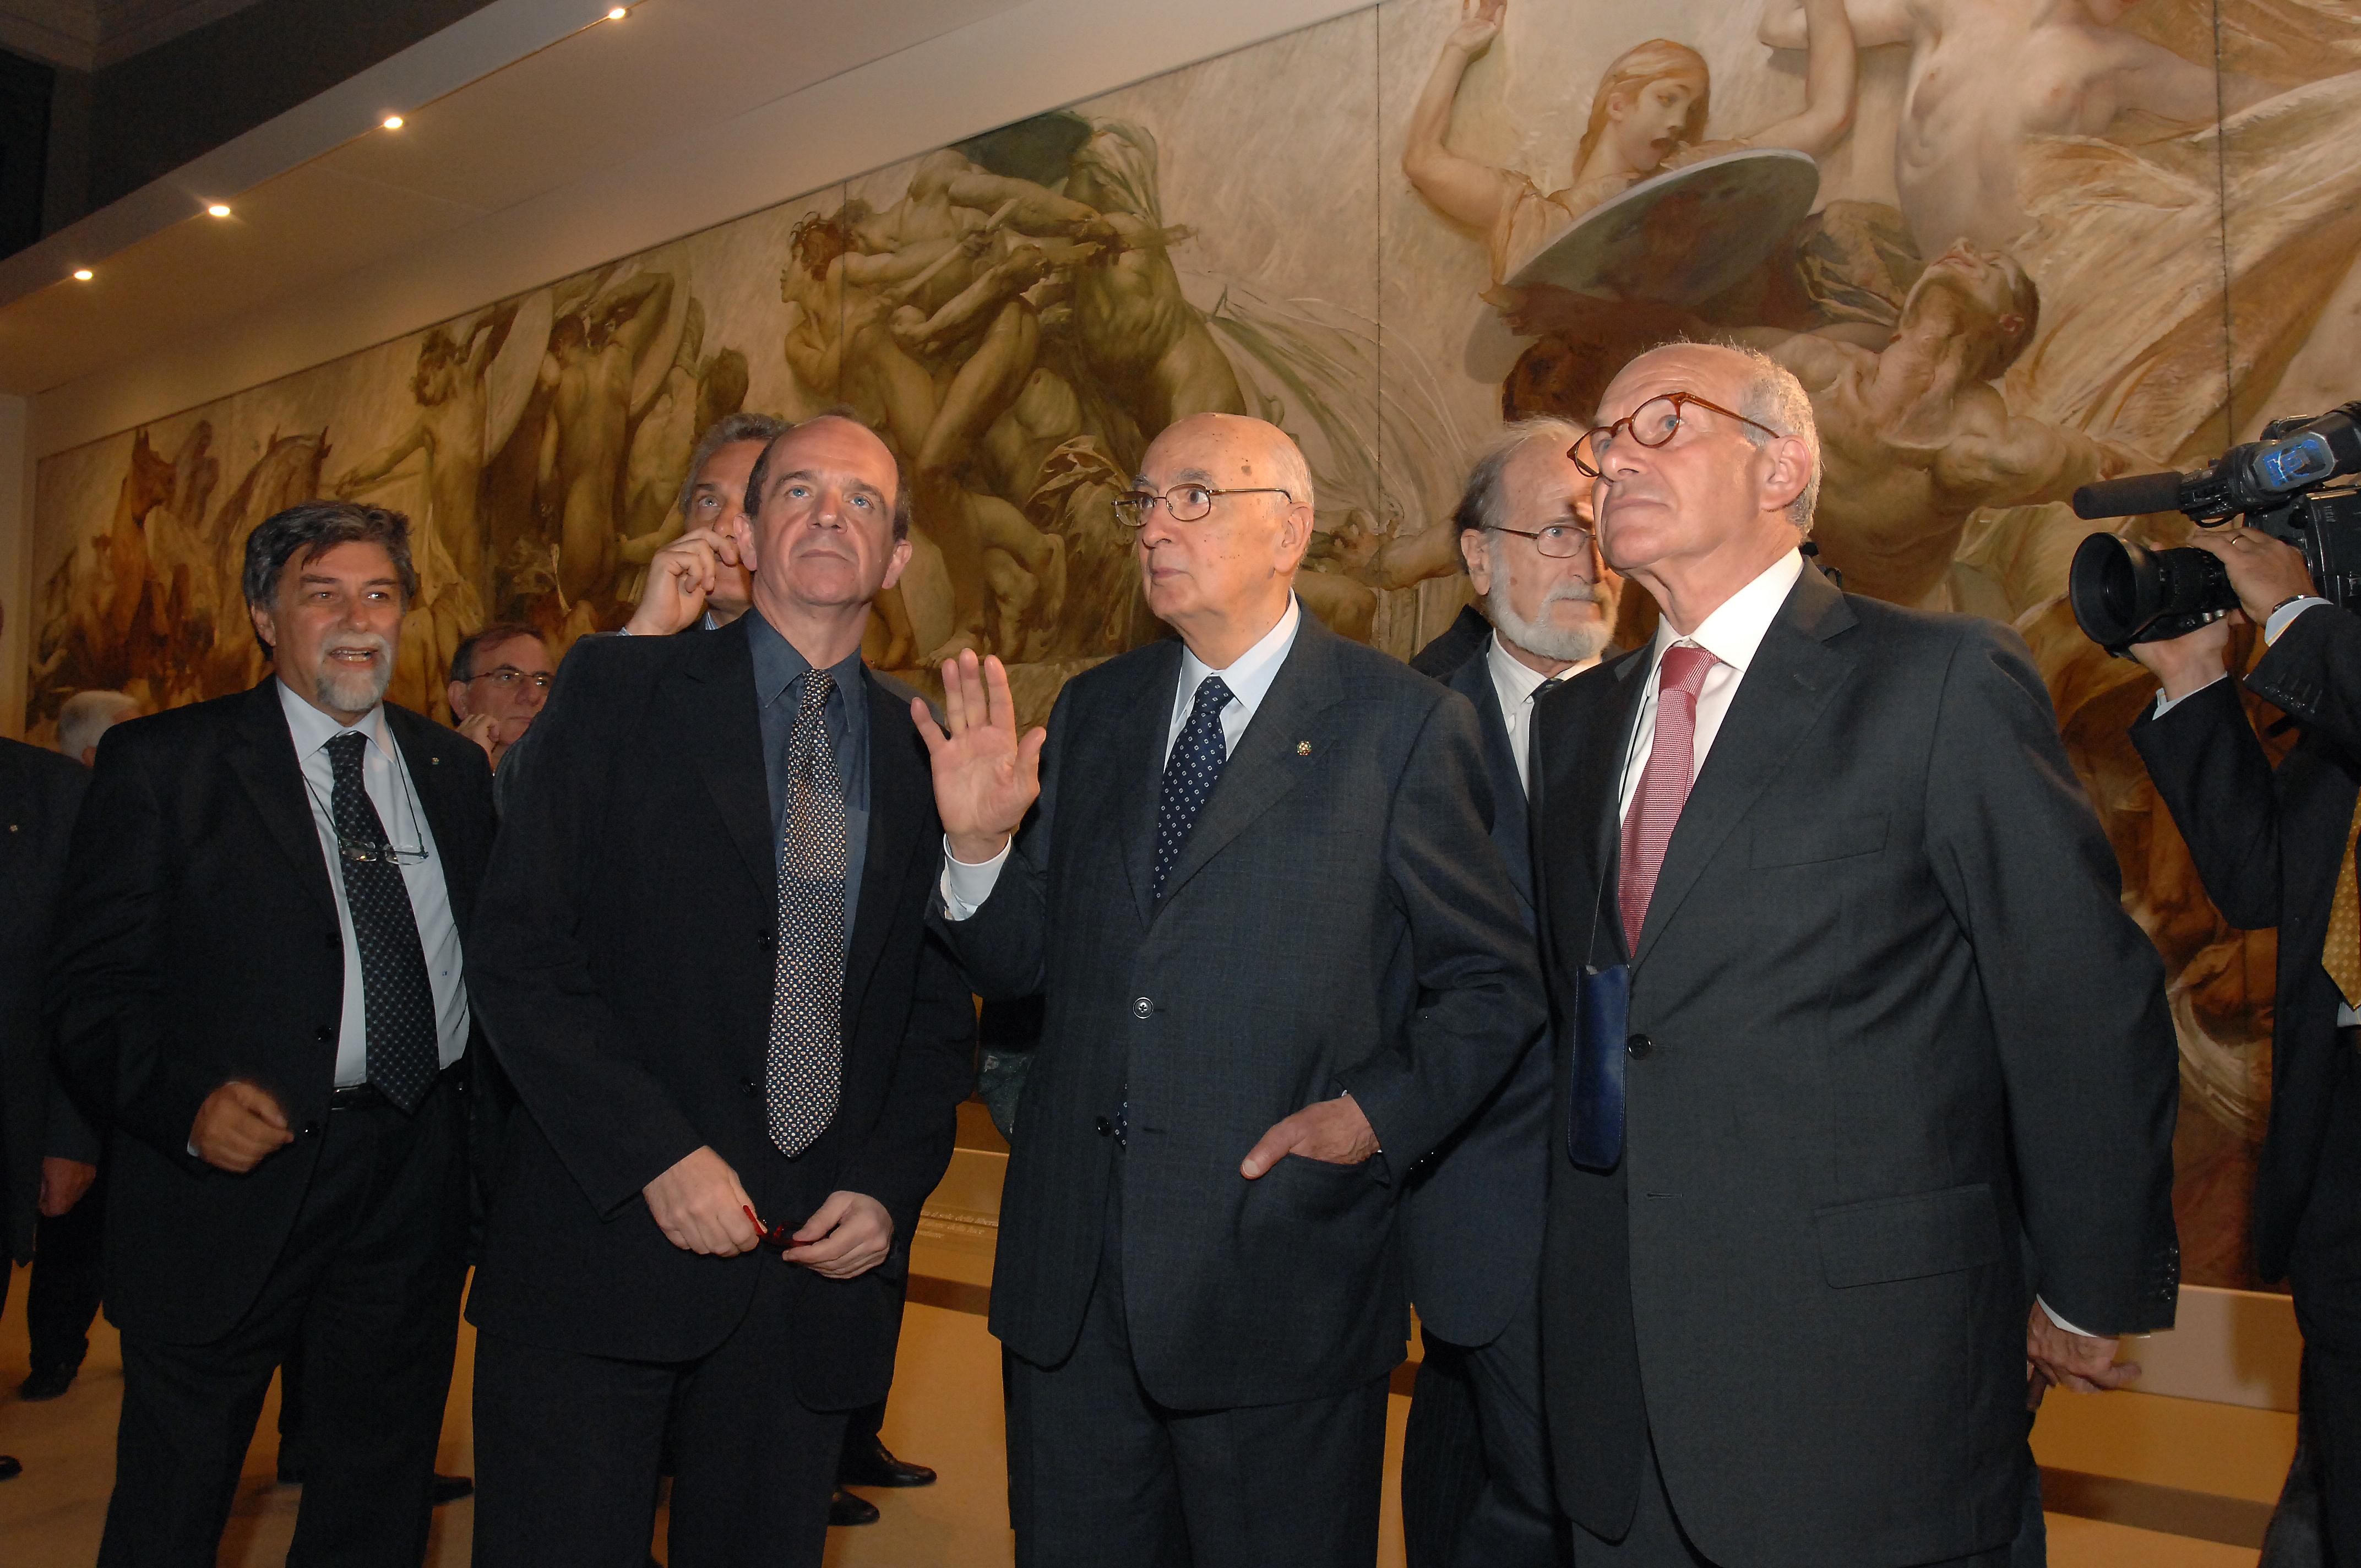 Inaugurazione della mostra sul fregio di Giulio Aristide Sartorio, 15 maggio 2007 - Il Presidente della Camera Bertinotti con il Presidente della Repubblica Napolitano